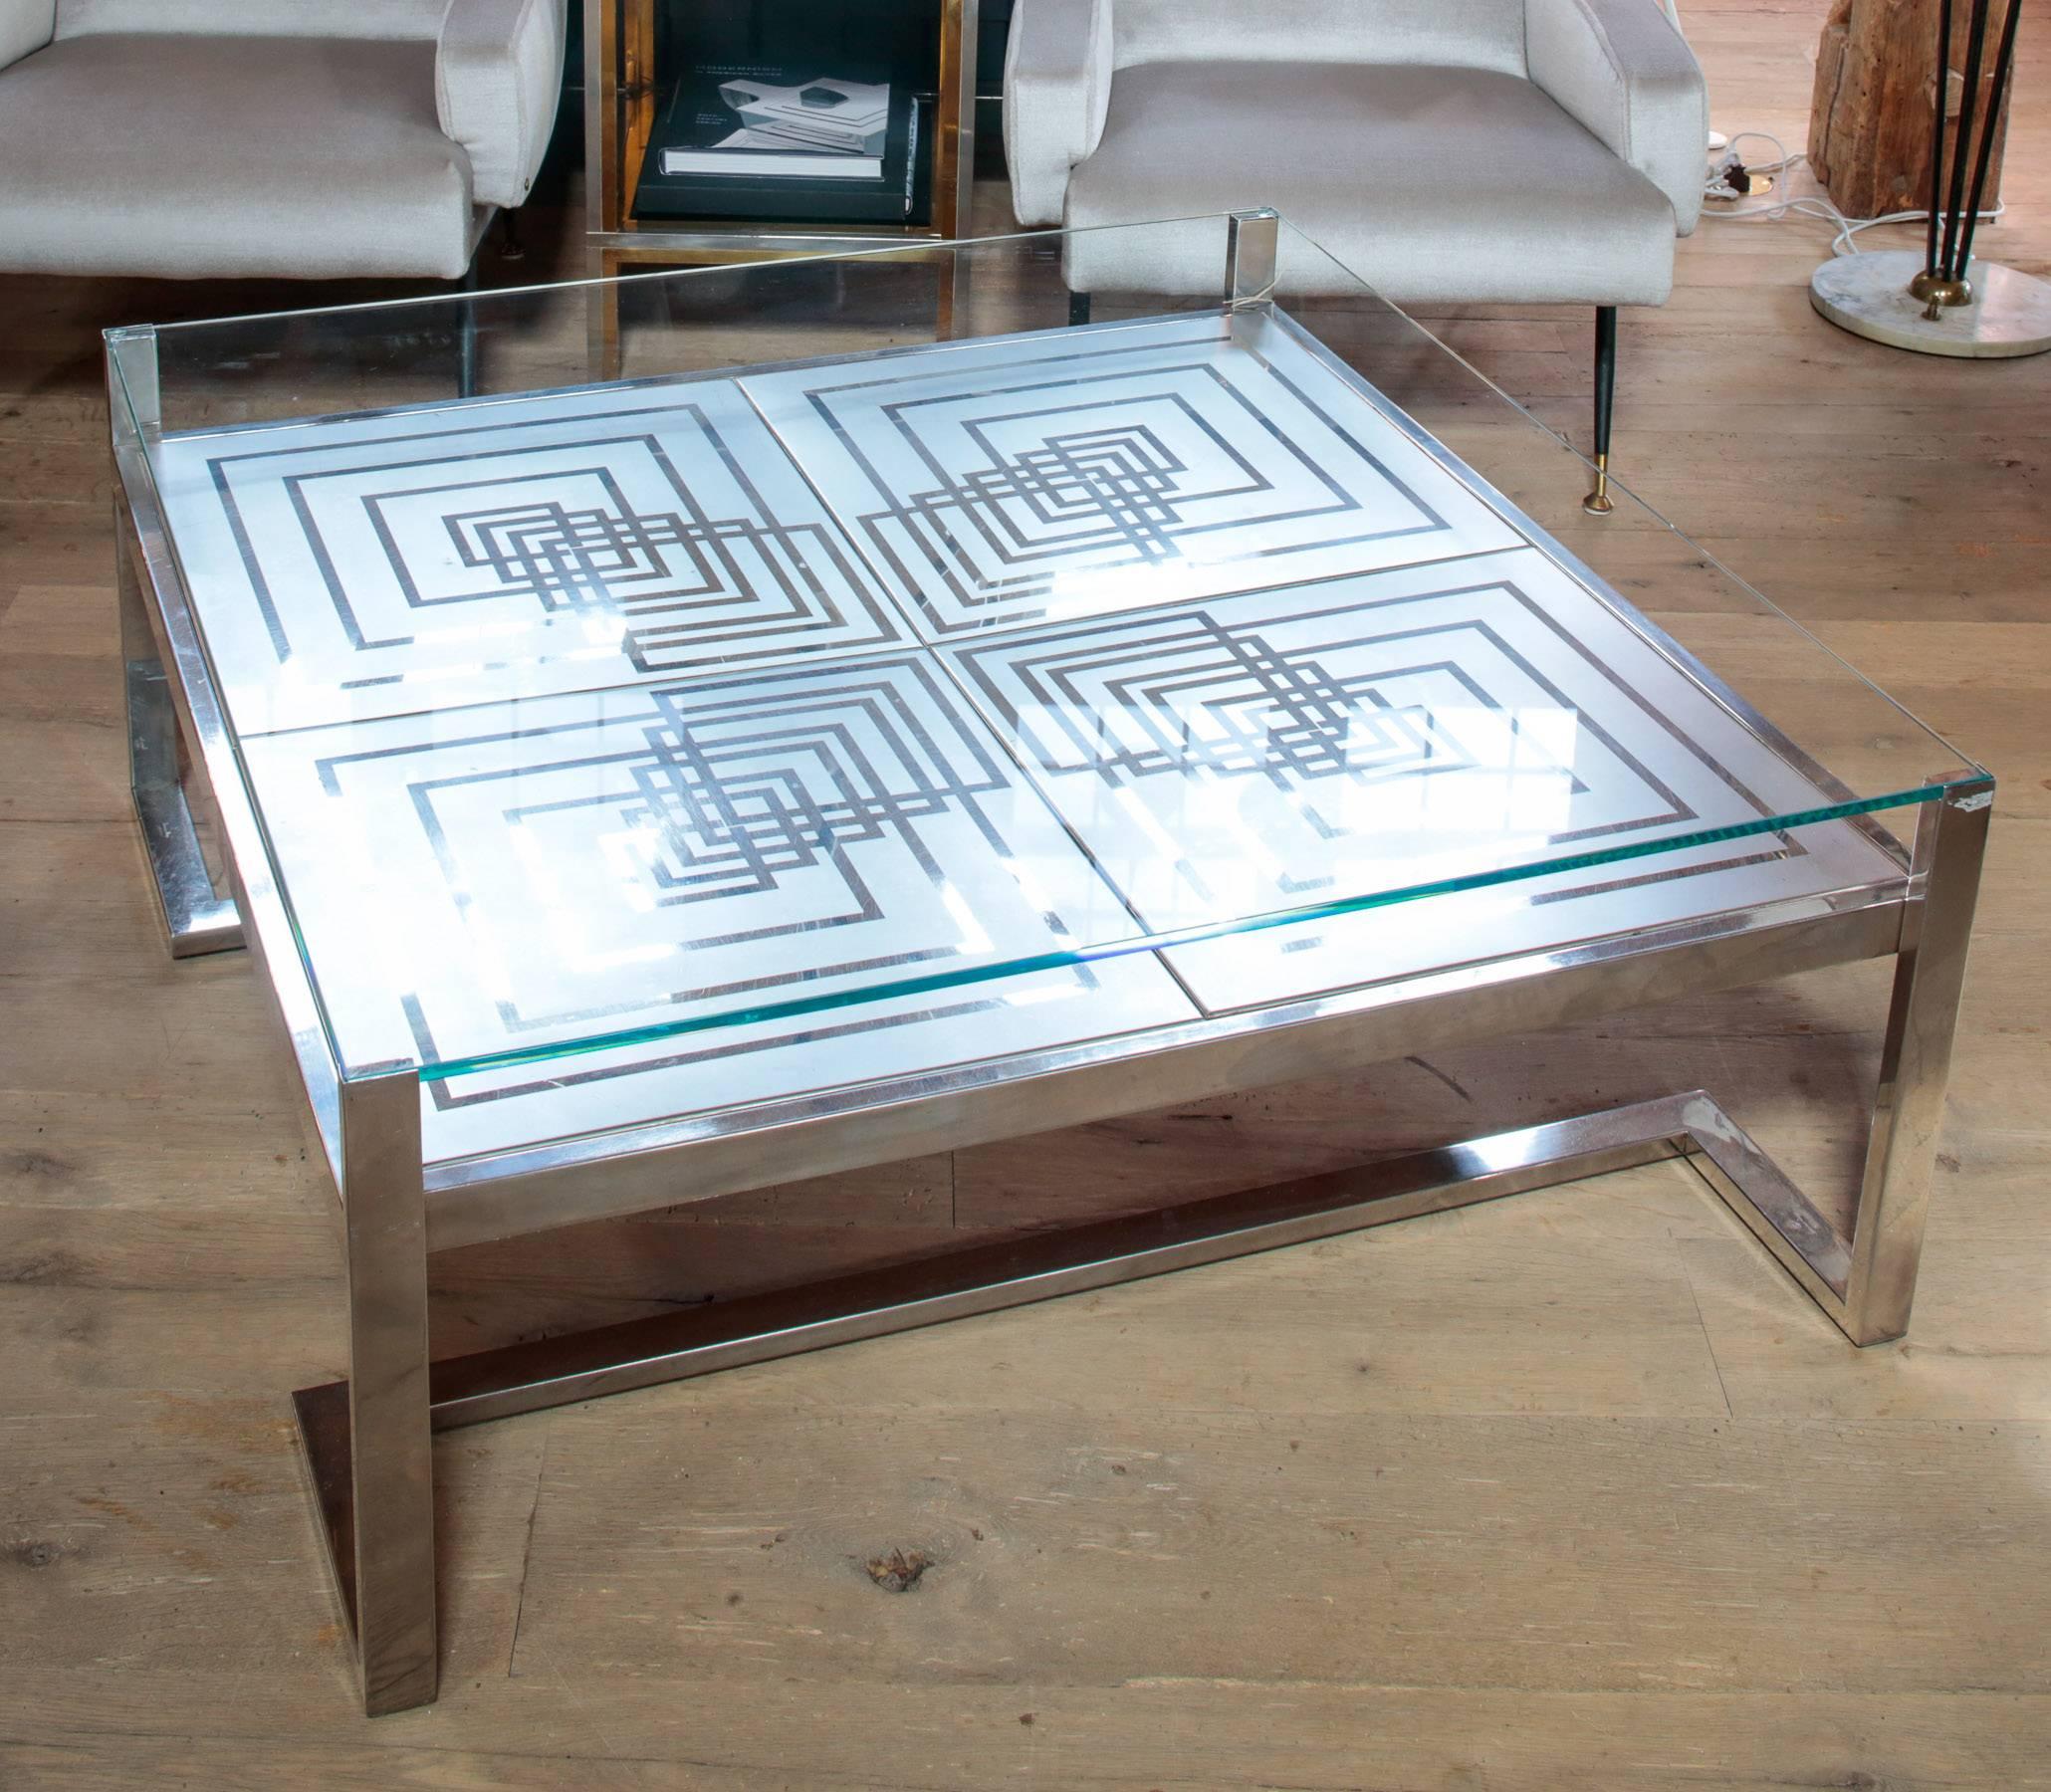 Magnifique table basse Romeo Rega des années 1970 en acier inoxydable et verre avec une belle gravure. Insigne du designer dans le coin.